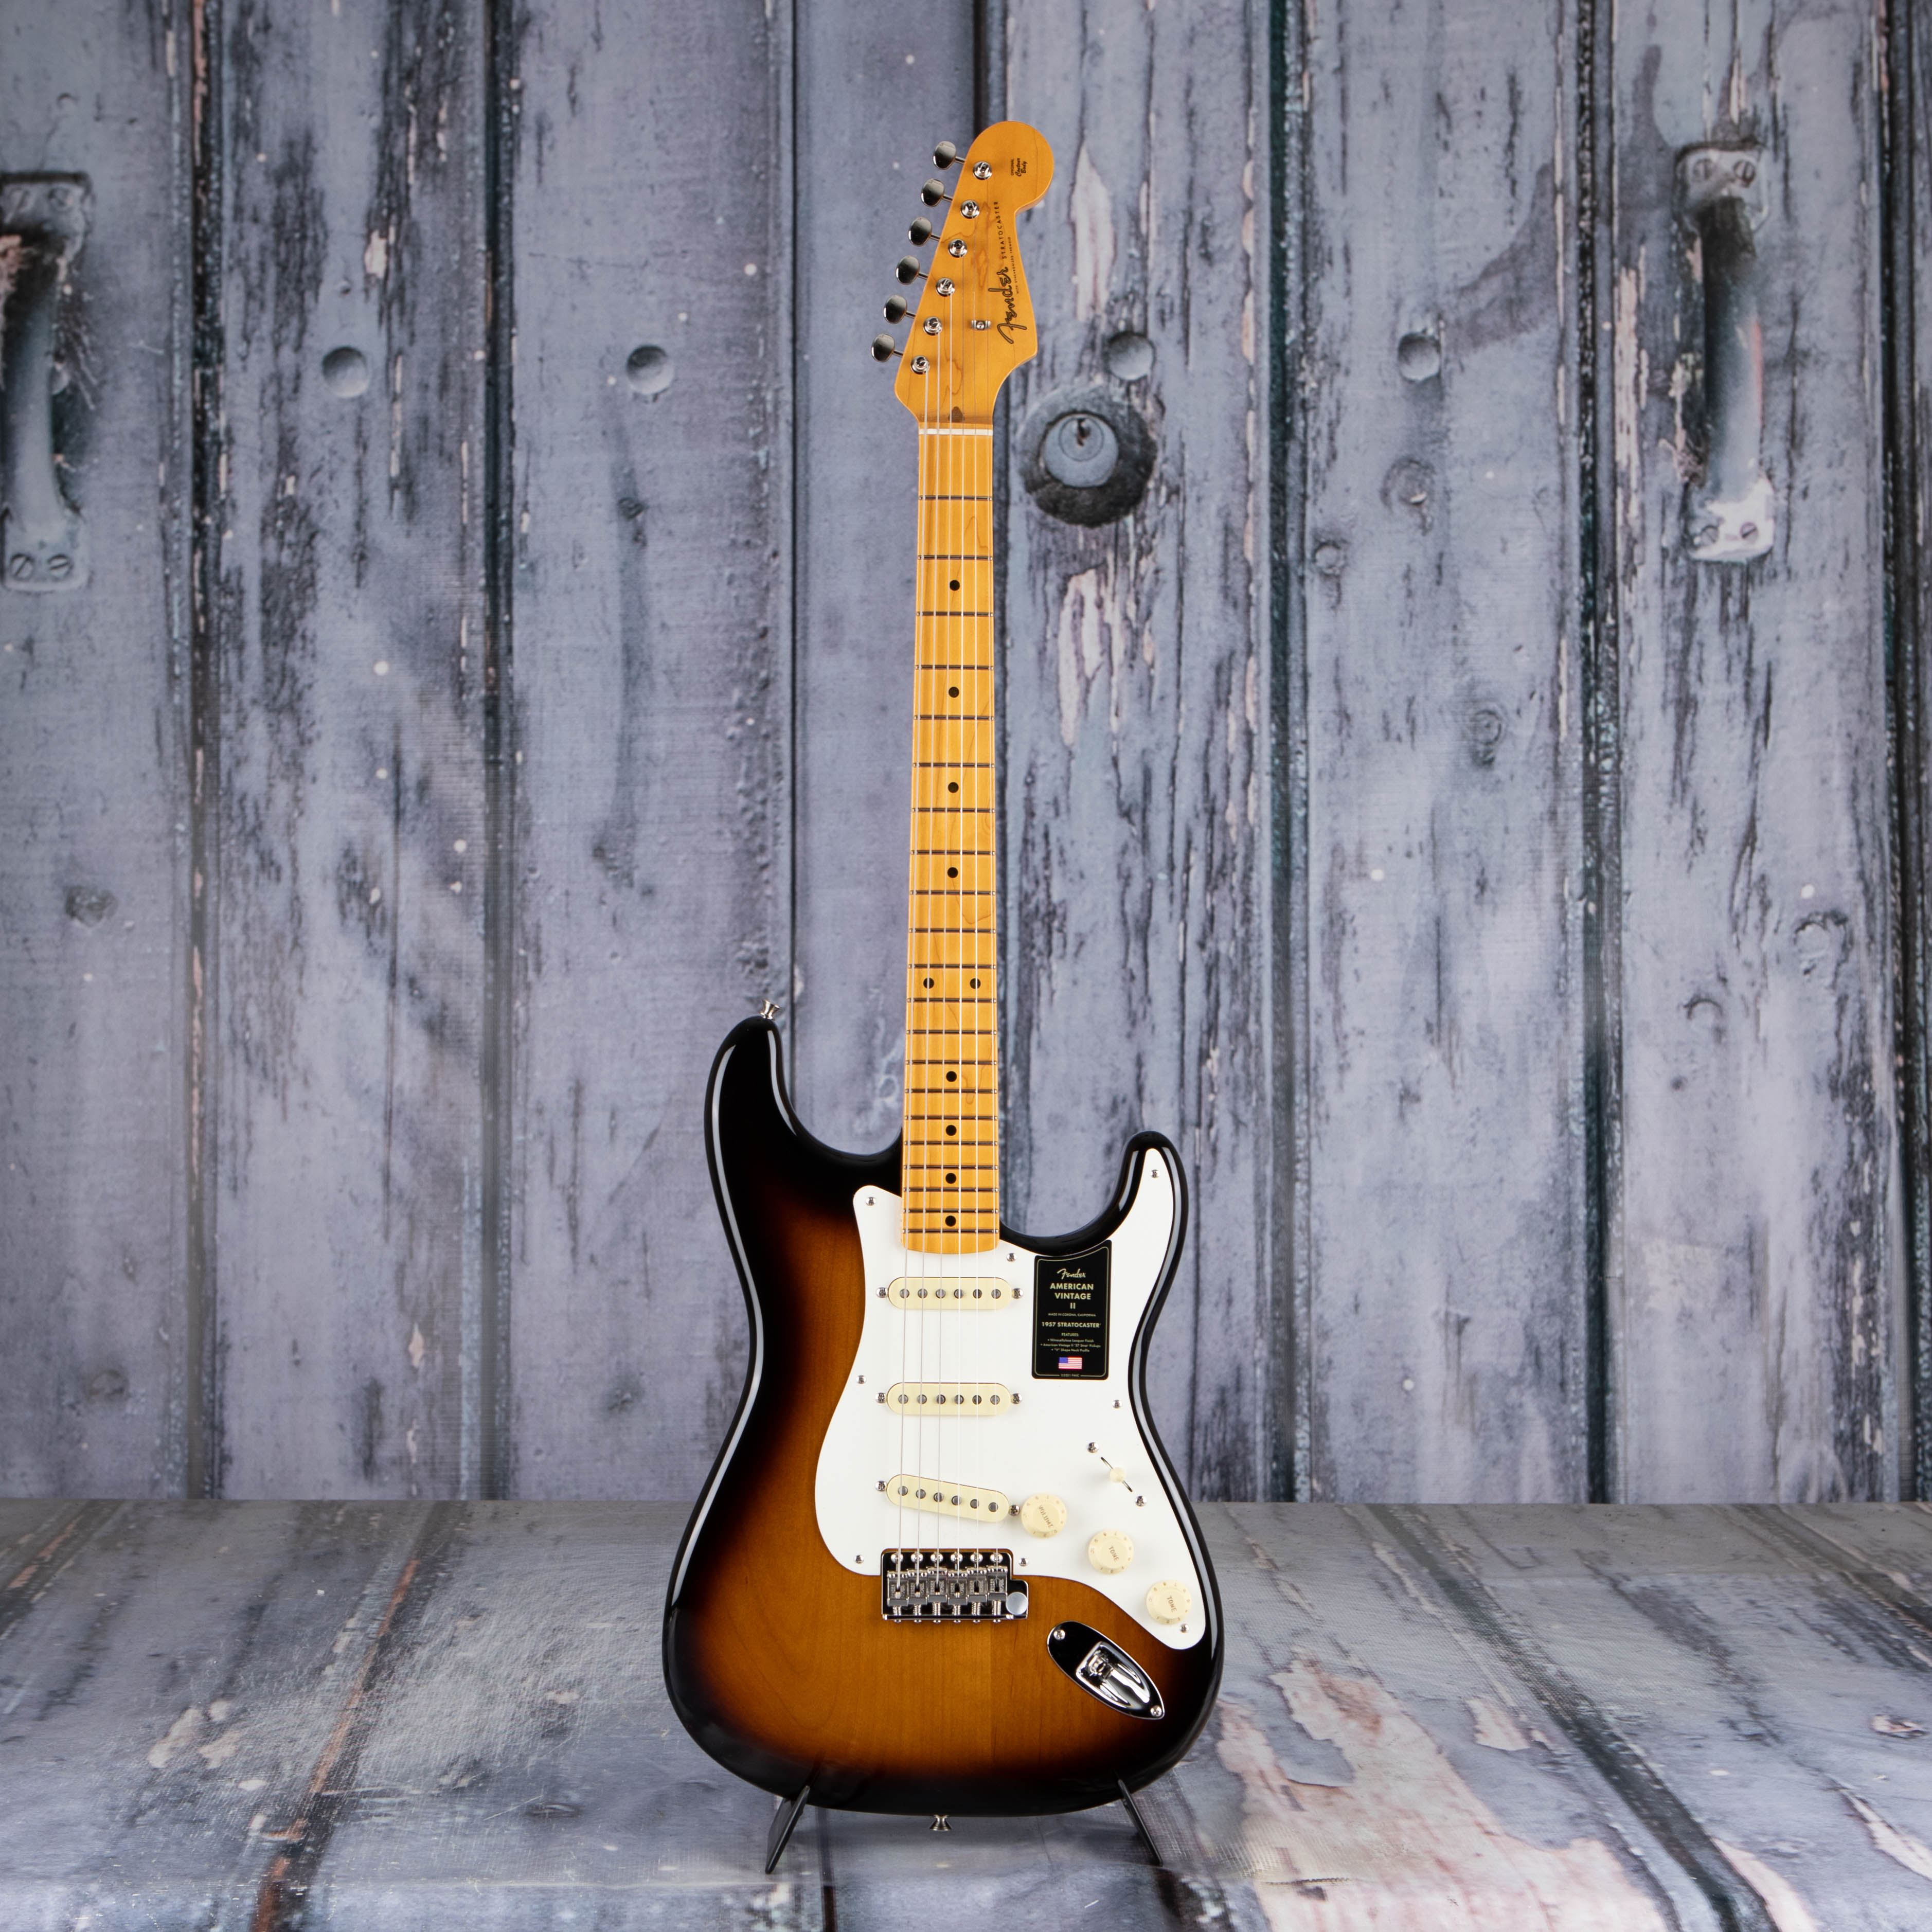 Fender American Vintage II 1957 Stratocaster Electric Guitar, 2-Color Sunburst, front